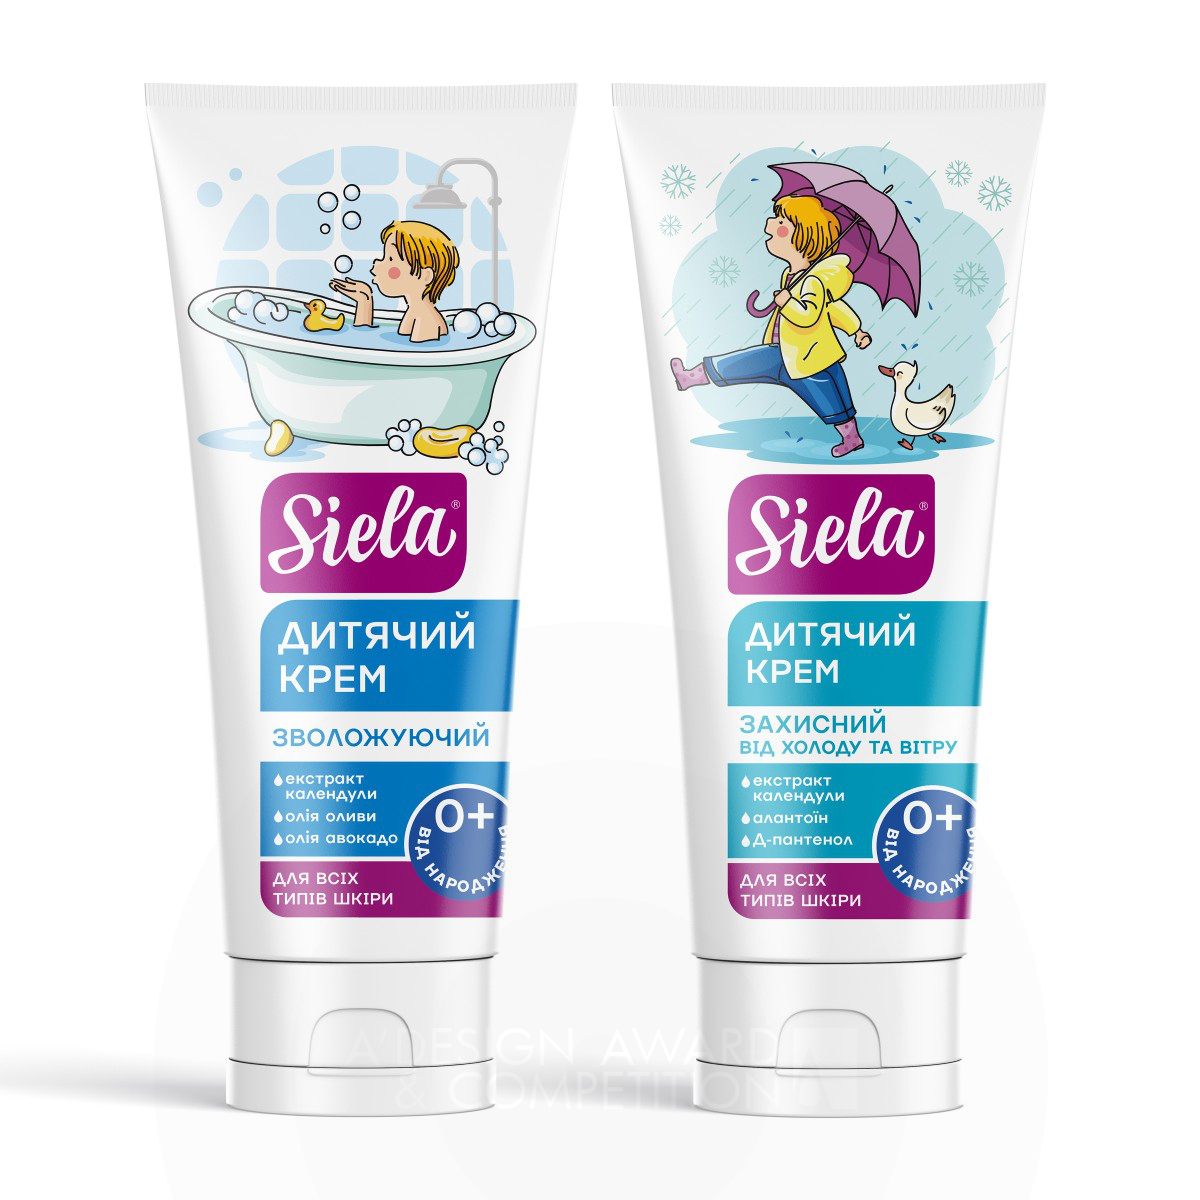 Siela : Emballage de cosmétiques pour enfants avec illustrations charmantes